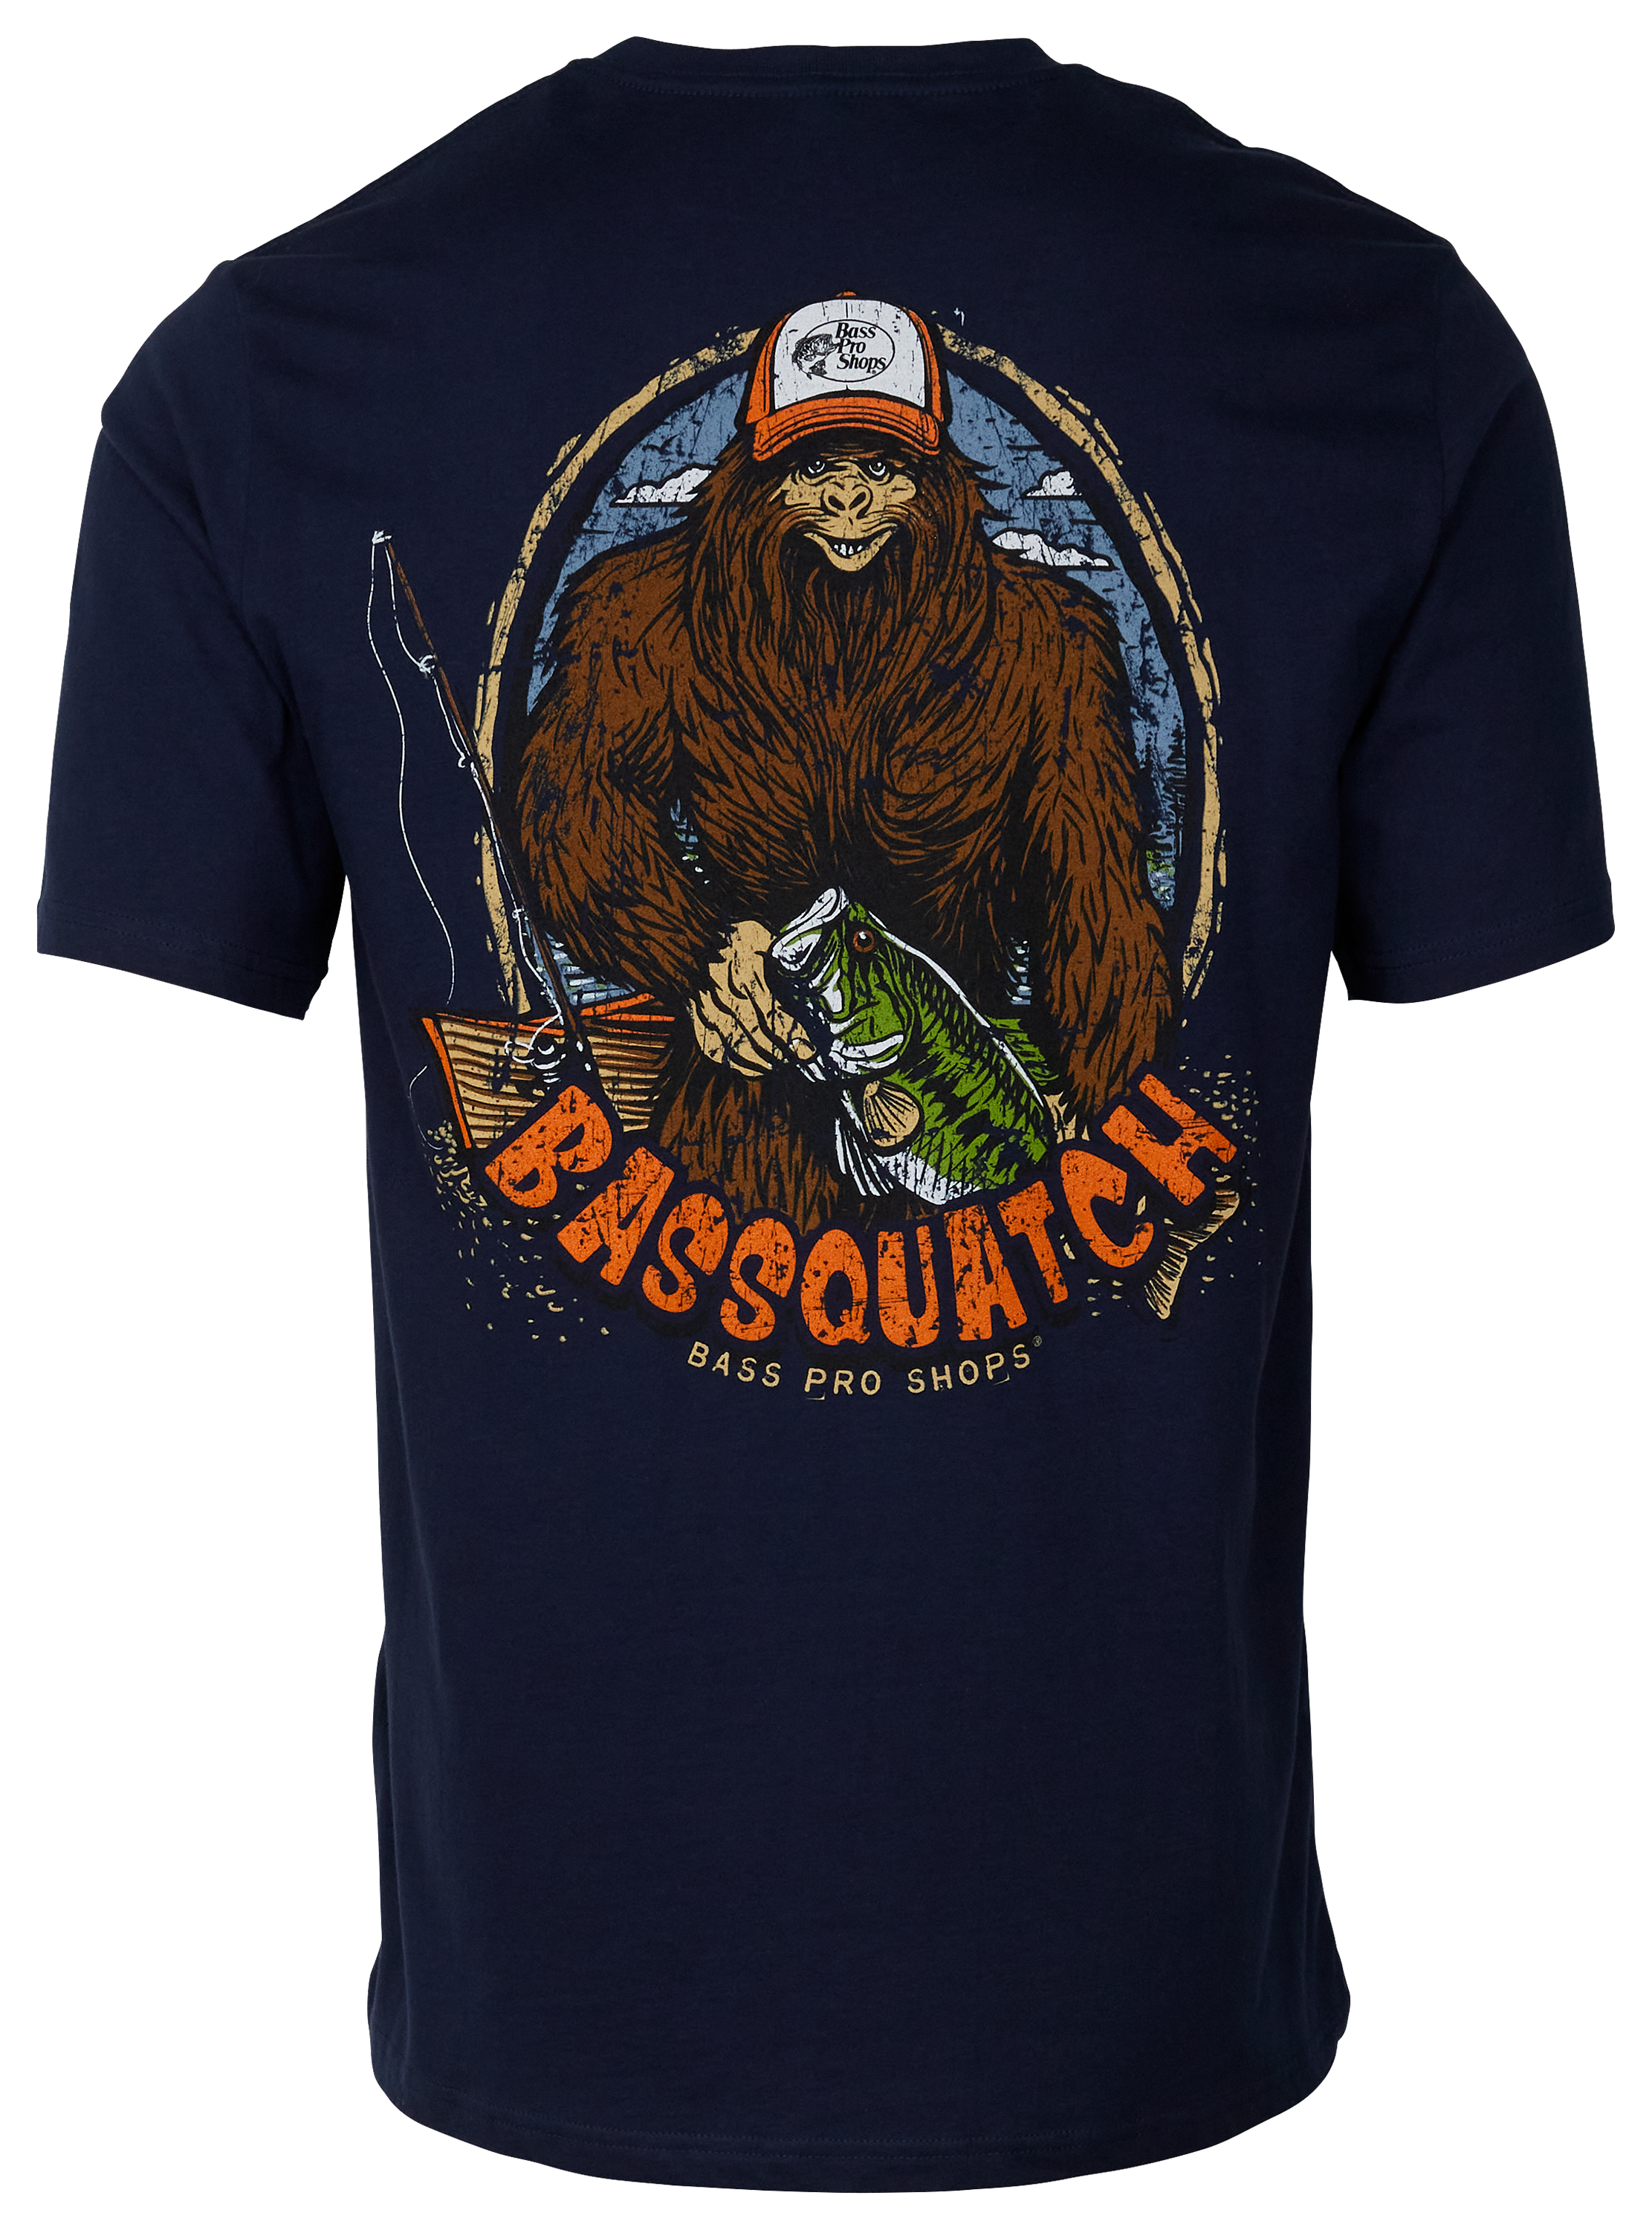 Bass Pro Shops Bassquatch Short-Sleeve T-Shirt for Men - Navy - 2XL